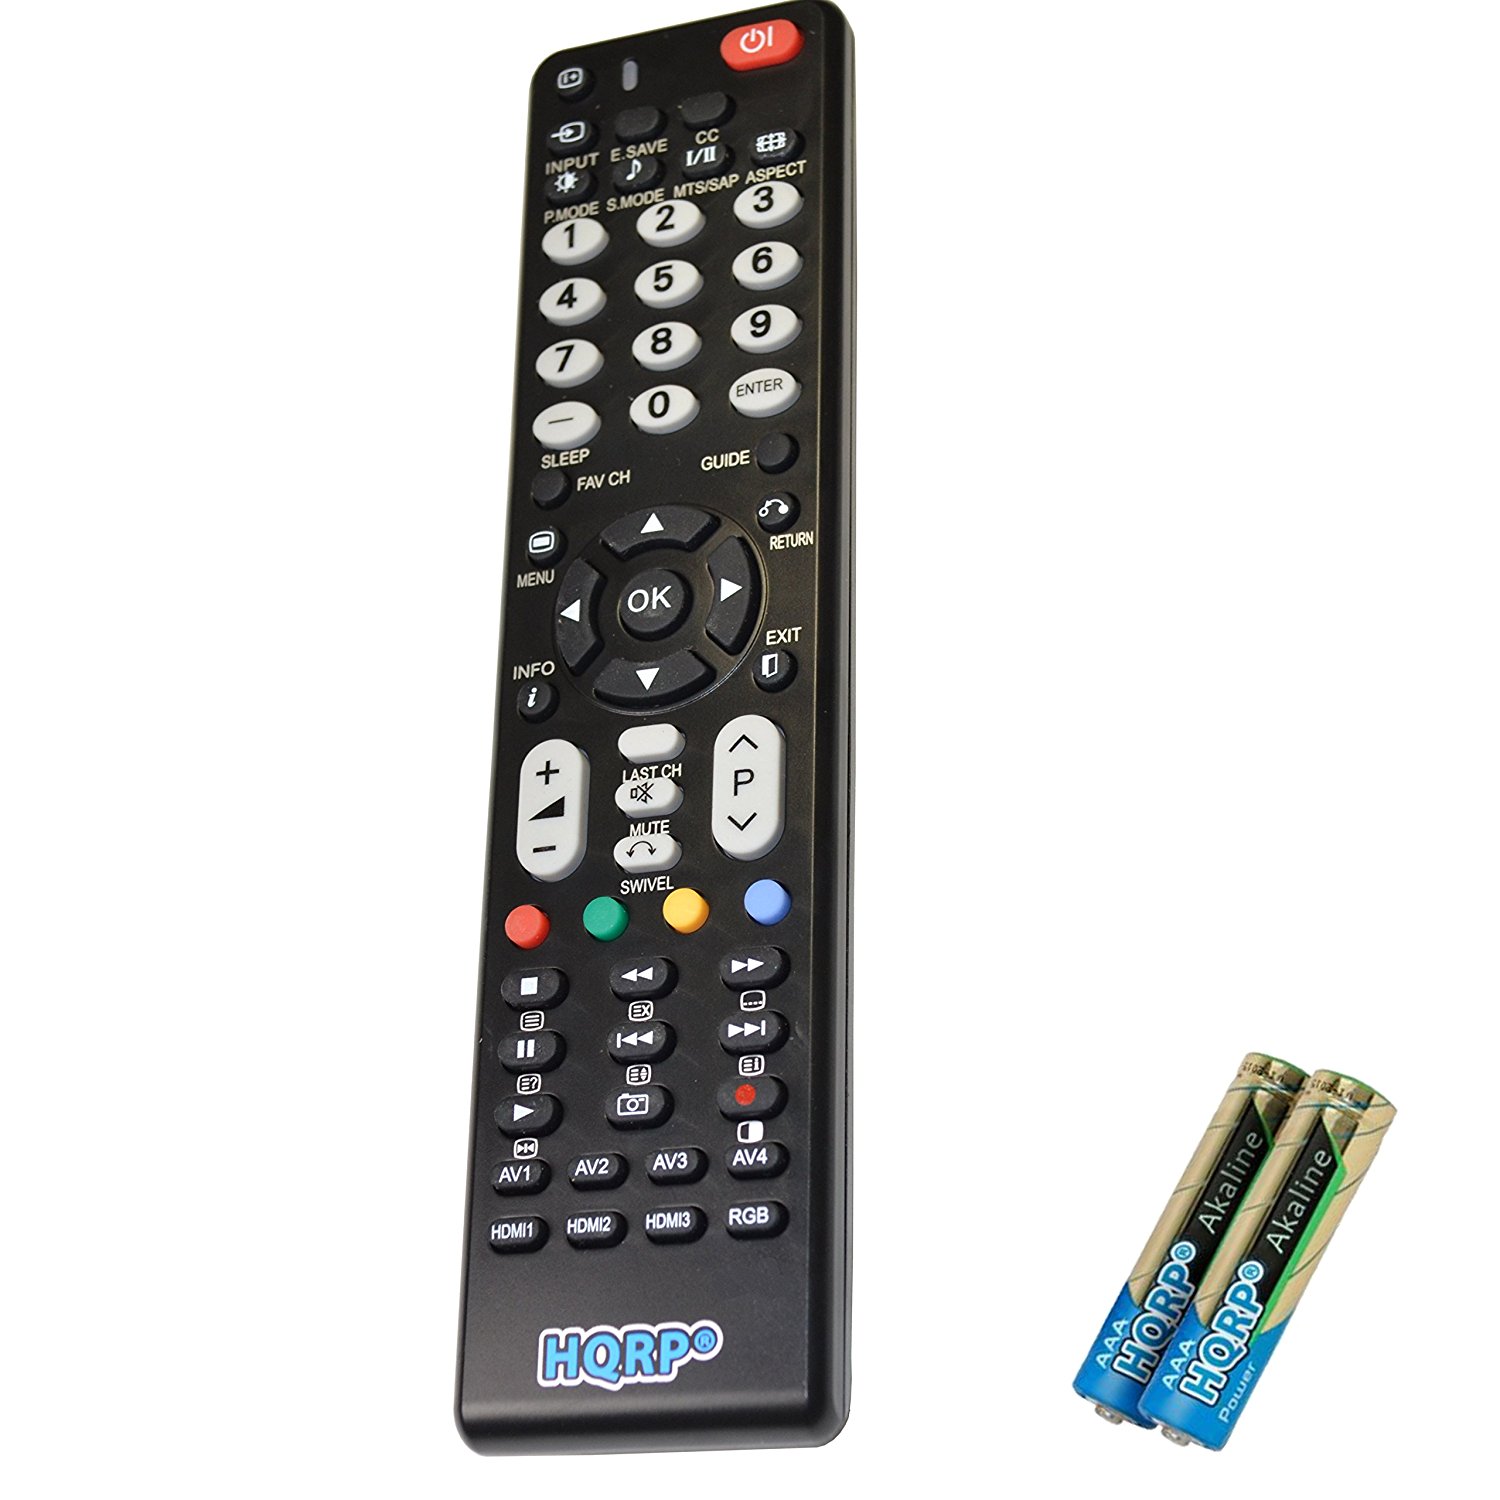 HQRP Remote Control for Hitachi LE55A6R9 LE55G508 LE55S606 LE55T516 LE55U516 LE55V707 LCD LED HD TV Smart 1080p 3D Ultra 4K Plasma